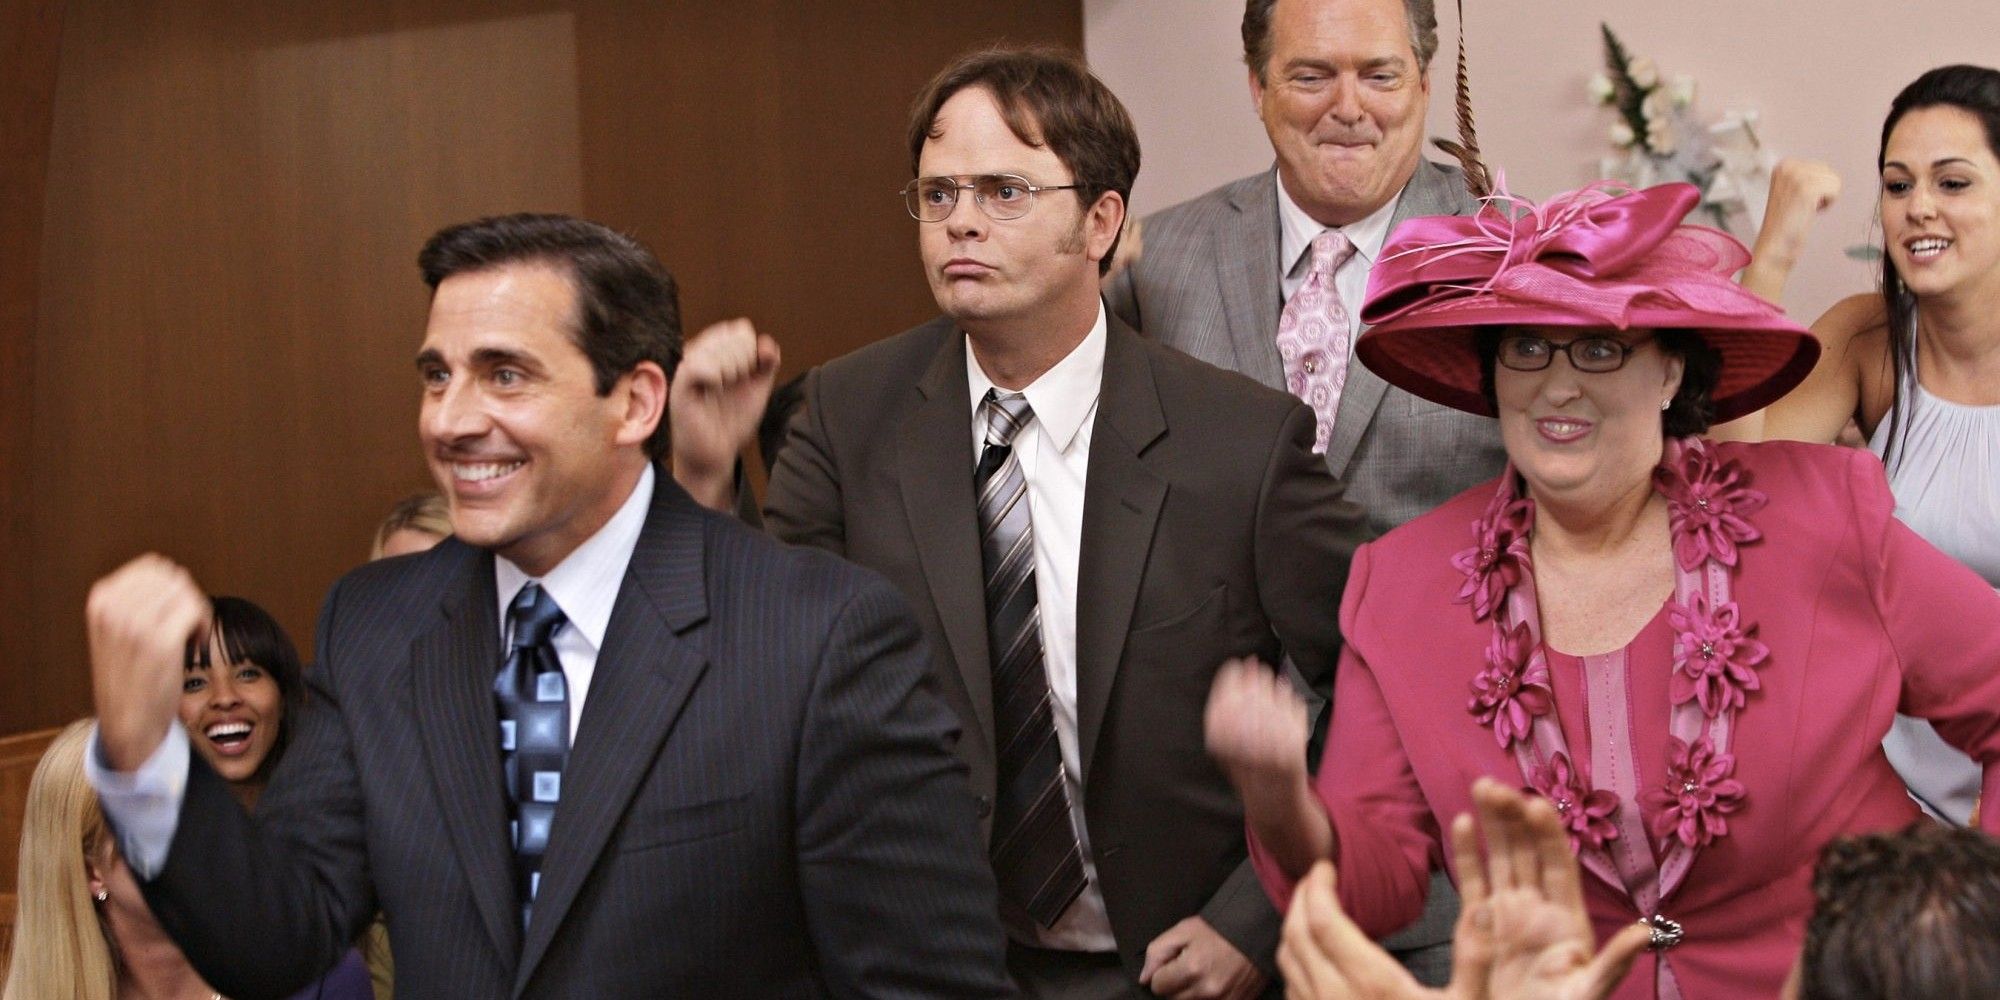 Michael et les autres employés dansent au mariage de Jim et Pam dans The Office.